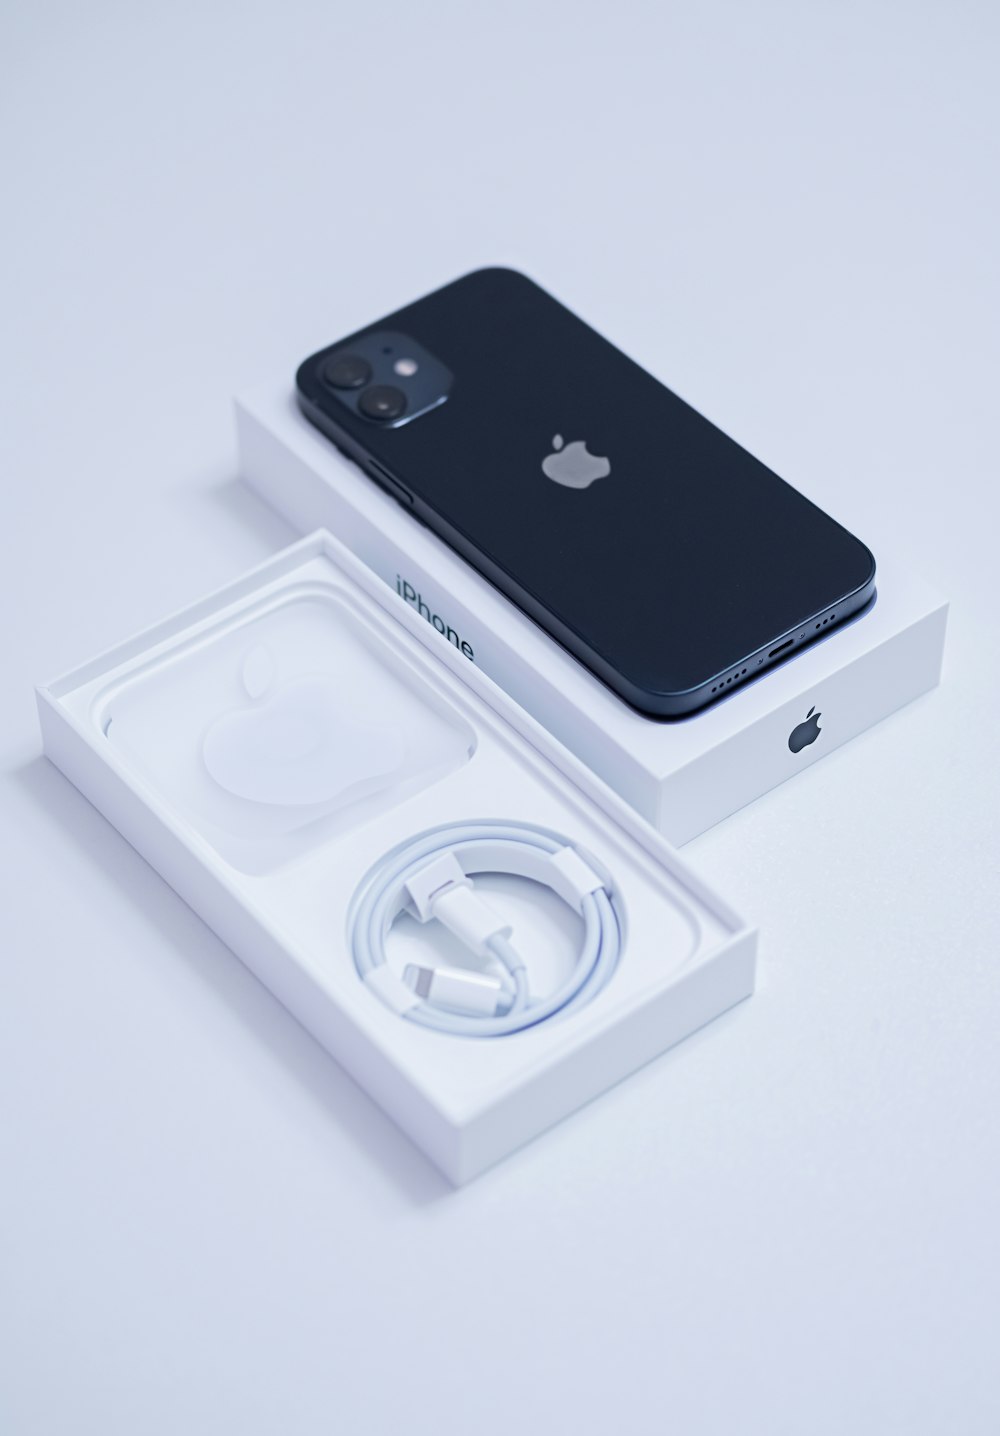 iphone 7 preto na caixa branca